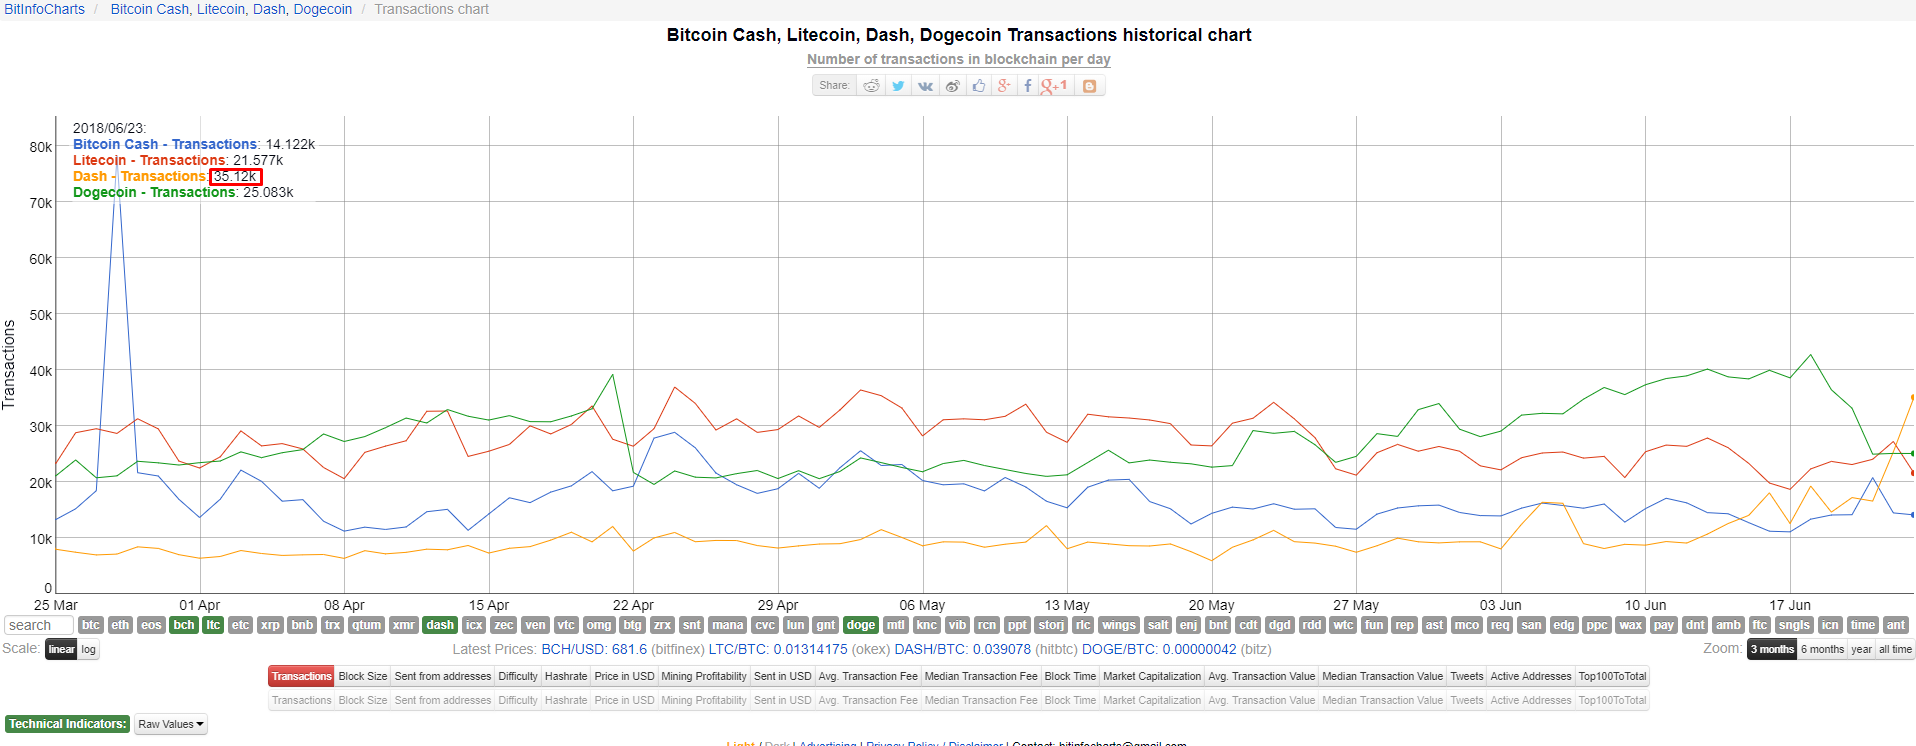 DASH обошла Bitcoin Cash и Litecoin по суточному объему транзакций